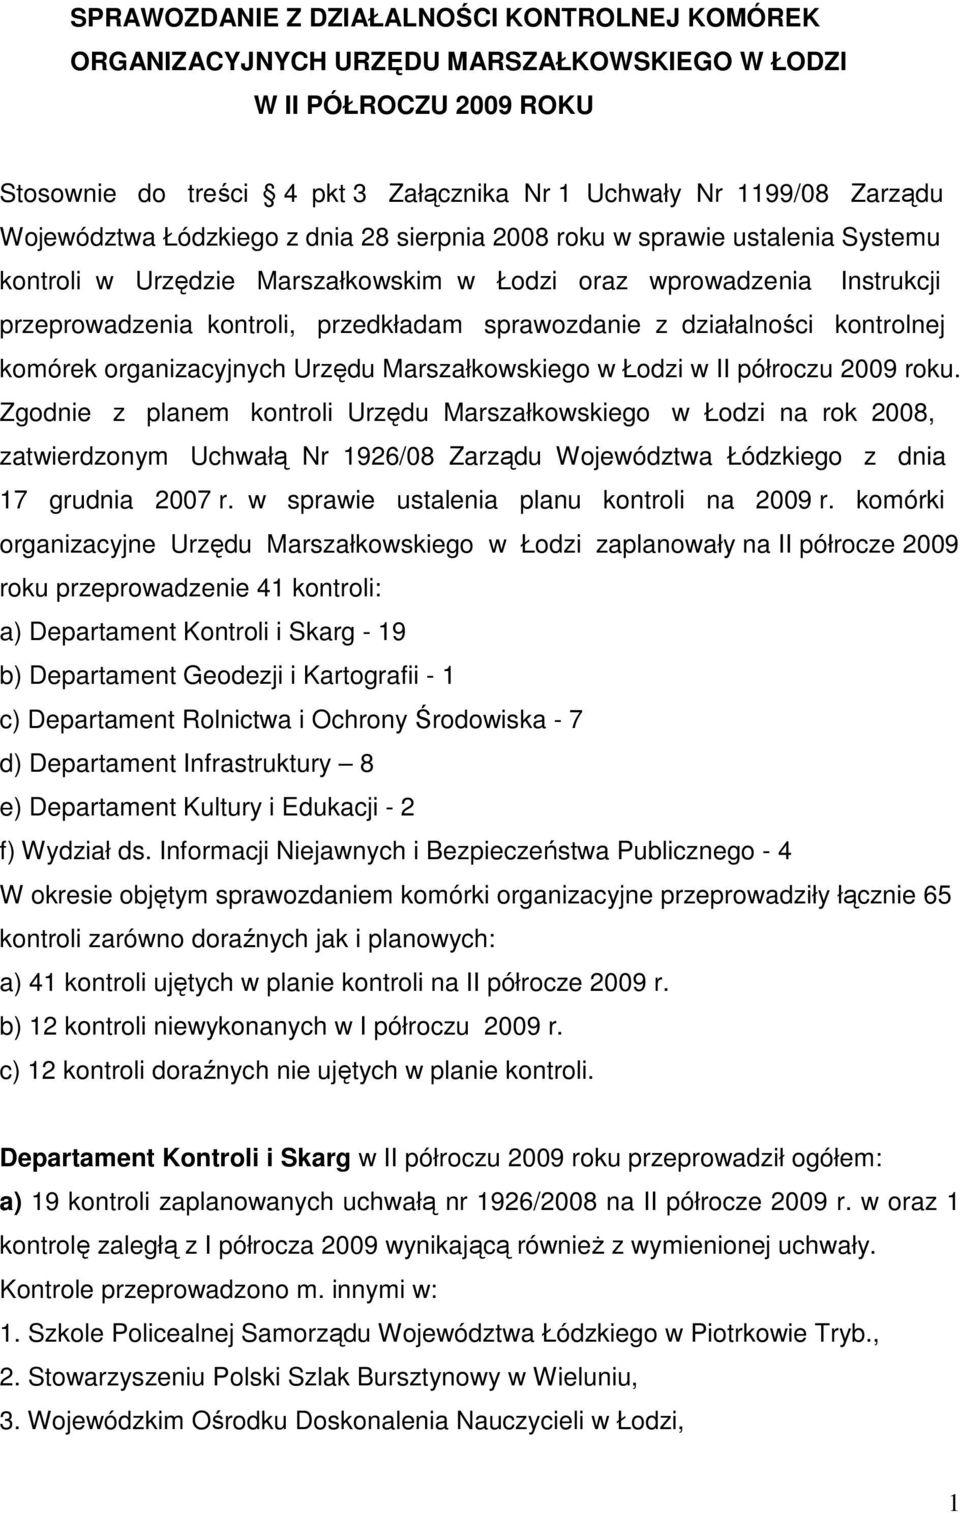 sprawozdanie z działalności kontrolnej komórek organizacyjnych Urzędu Marszałkowskiego w Łodzi w II półroczu 2009 roku.